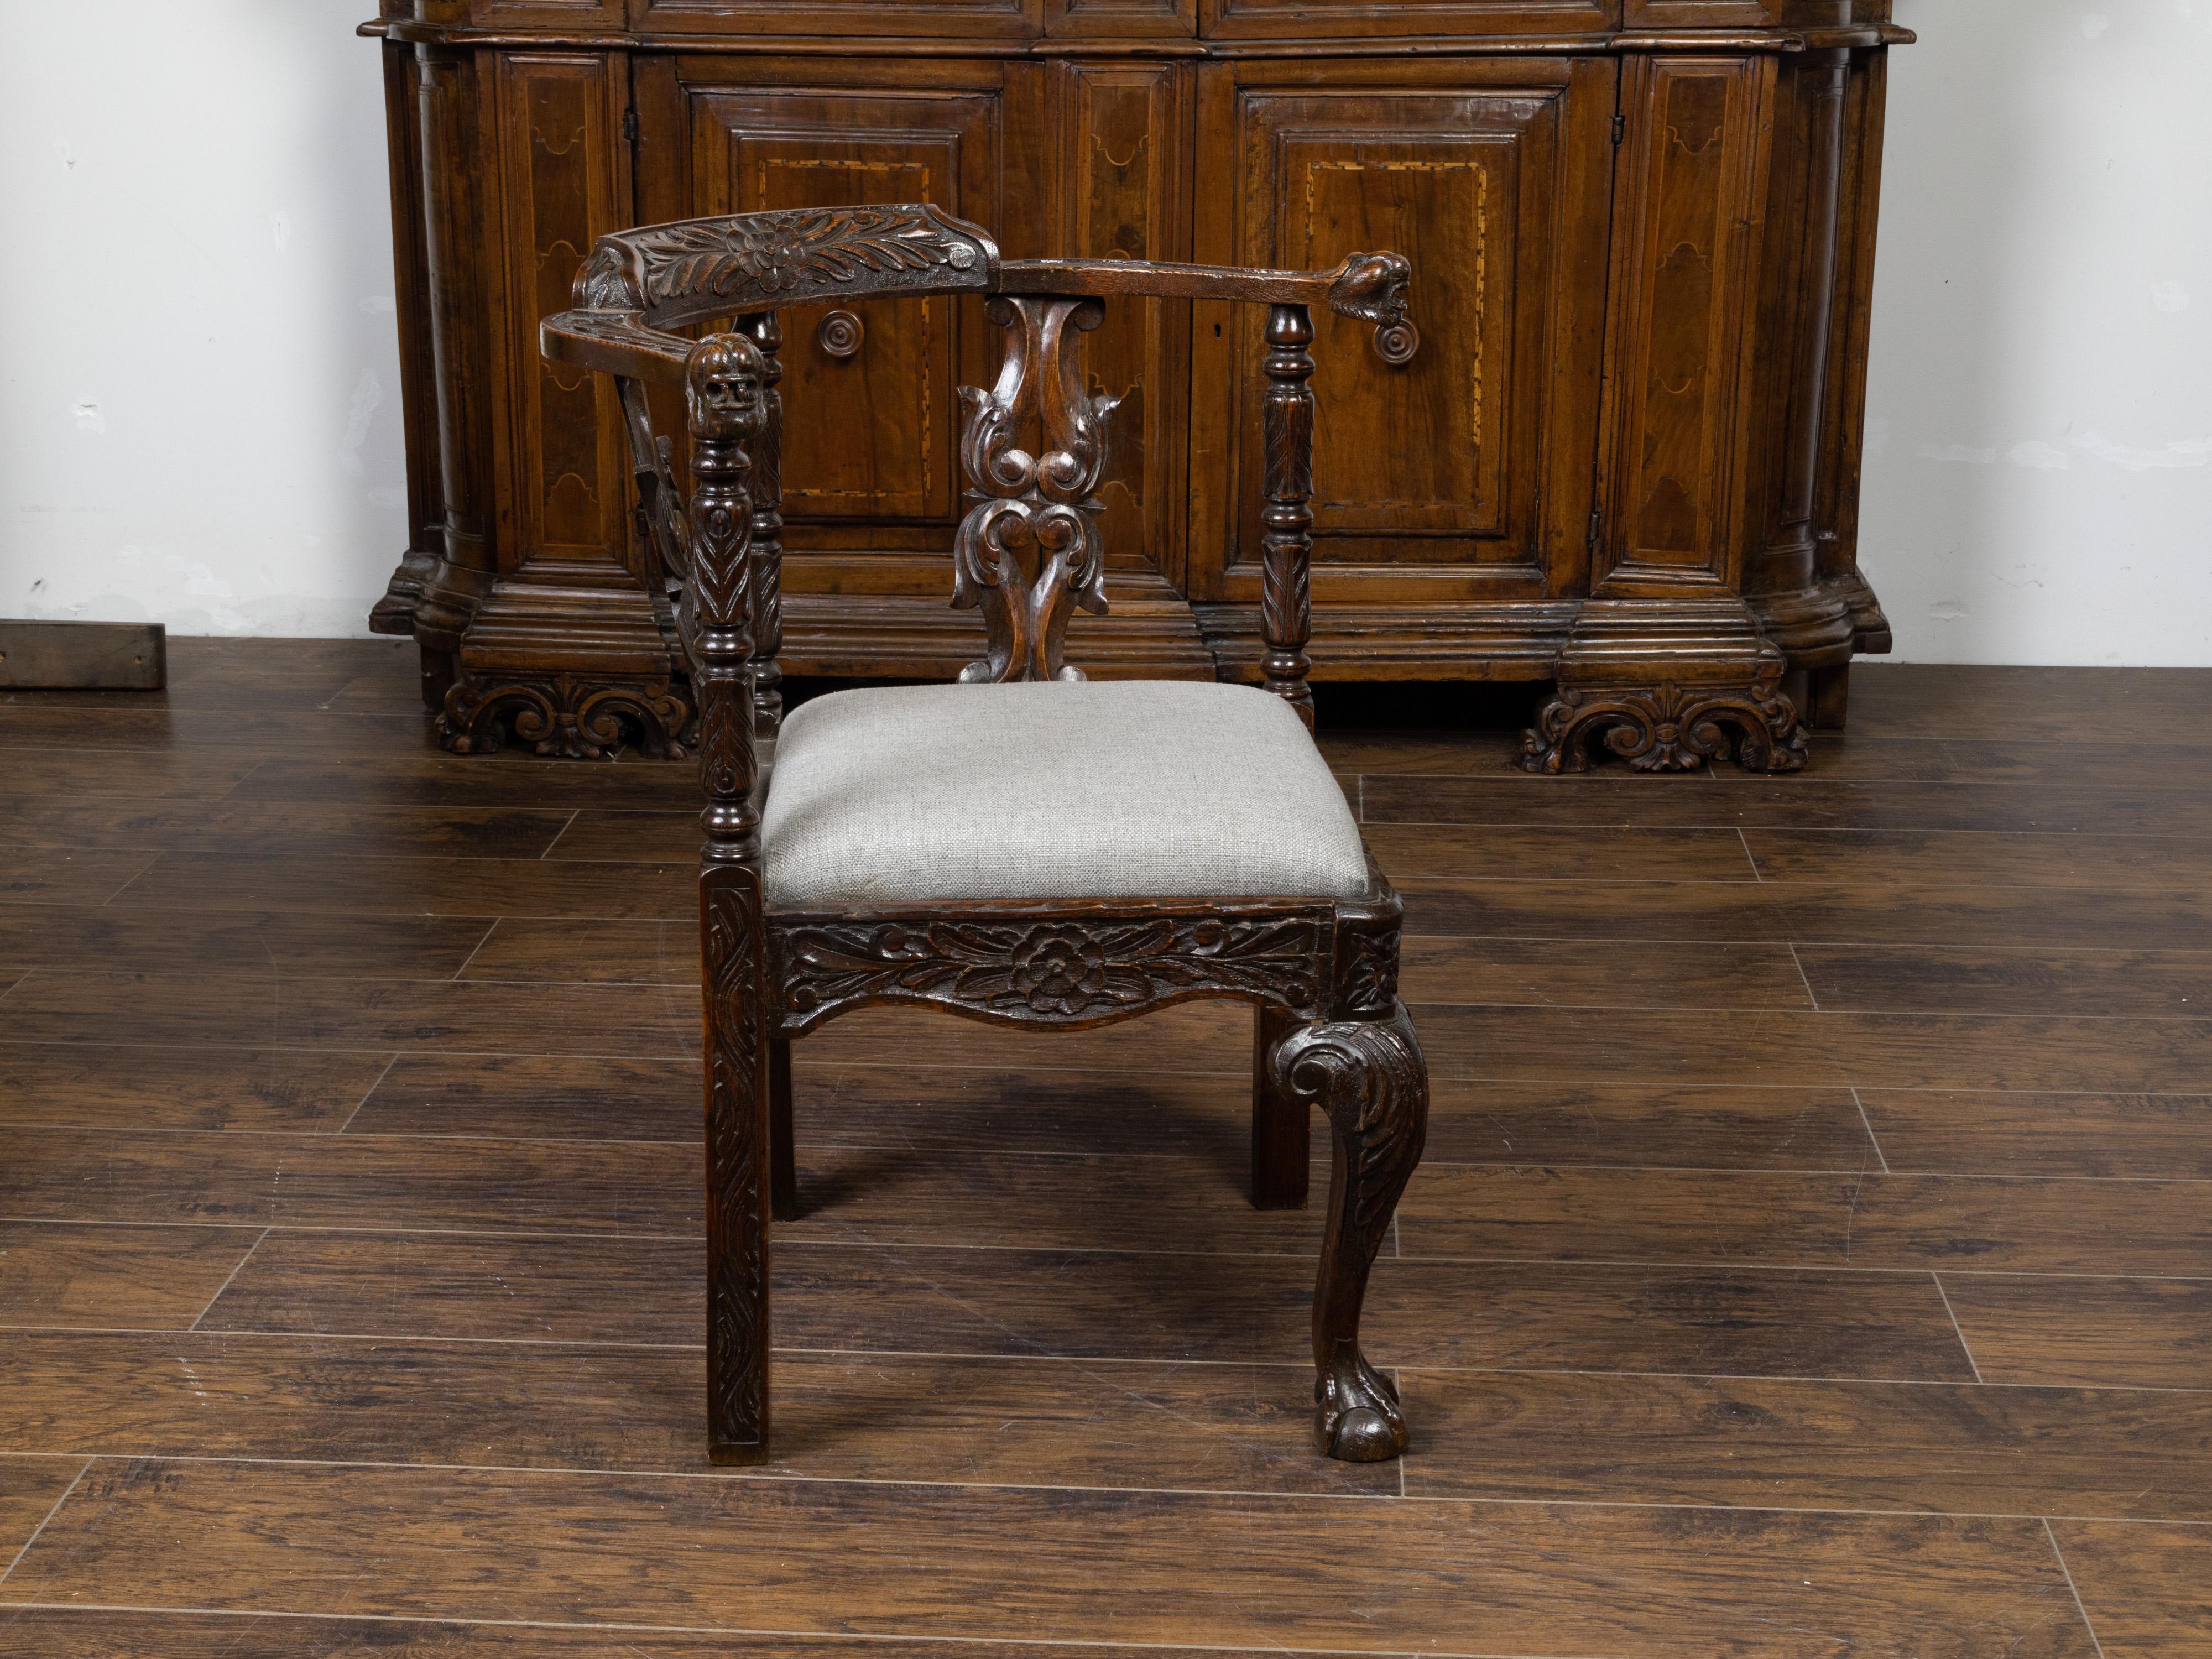 Englischer Eichen-Eckstuhl aus dem 19. Jahrhundert, mit geschnitztem Blattwerk, Maskaron-Motiven und neuer Polsterung. Dieser Eckstuhl aus Eichenholz, der im 19. Jahrhundert in England hergestellt wurde, zeichnet sich durch eine reich geschnitzte